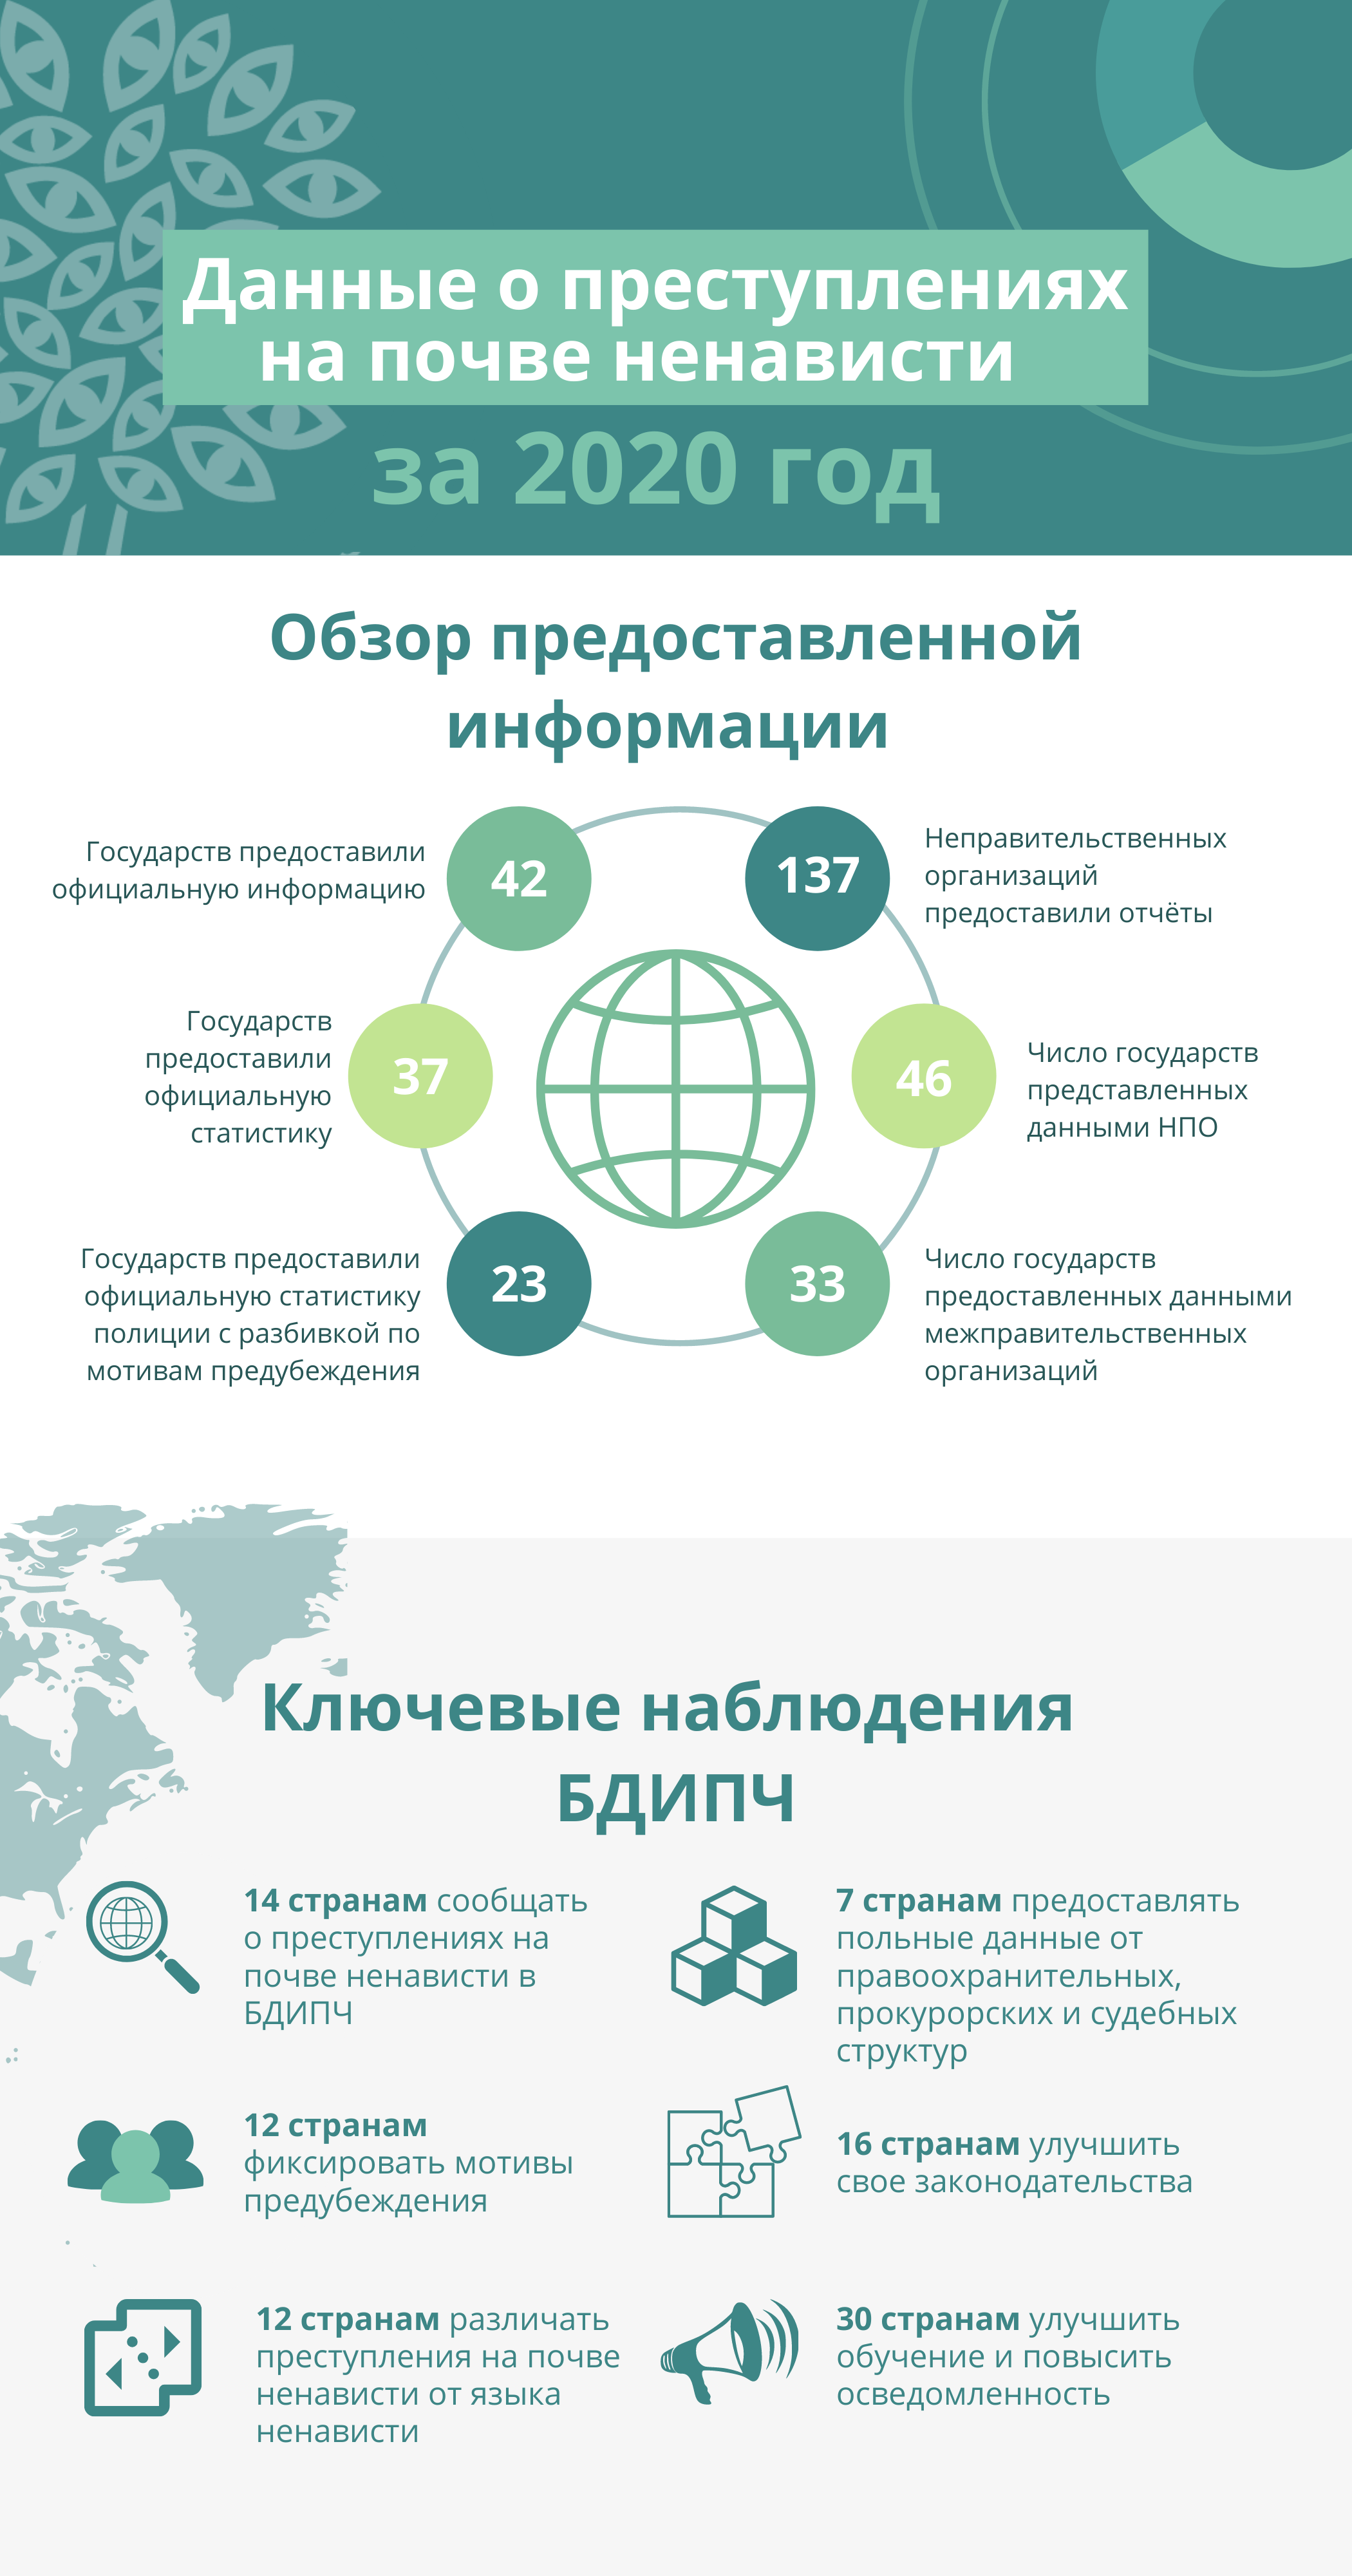 2020 HCR infographic_1_RU